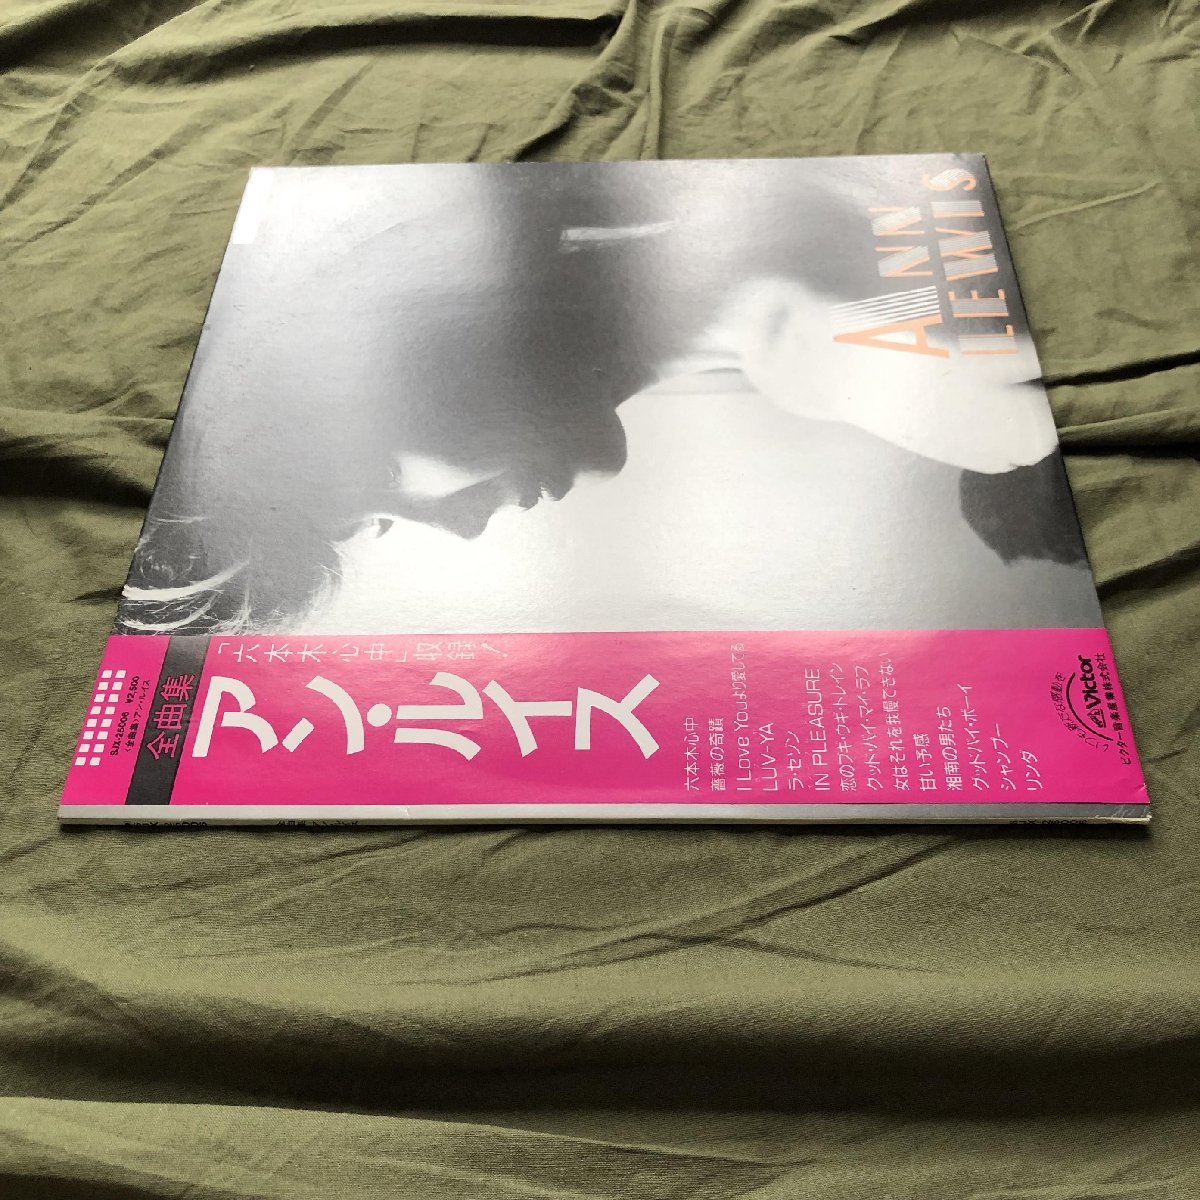 1985年 オリジナルリリース盤 アン・ルイス Ann Lewis LPレコード 全曲集 帯付 J-Pop 山下達郎・恋のブギ・ウギ・トレイン ラ・セゾン_画像3